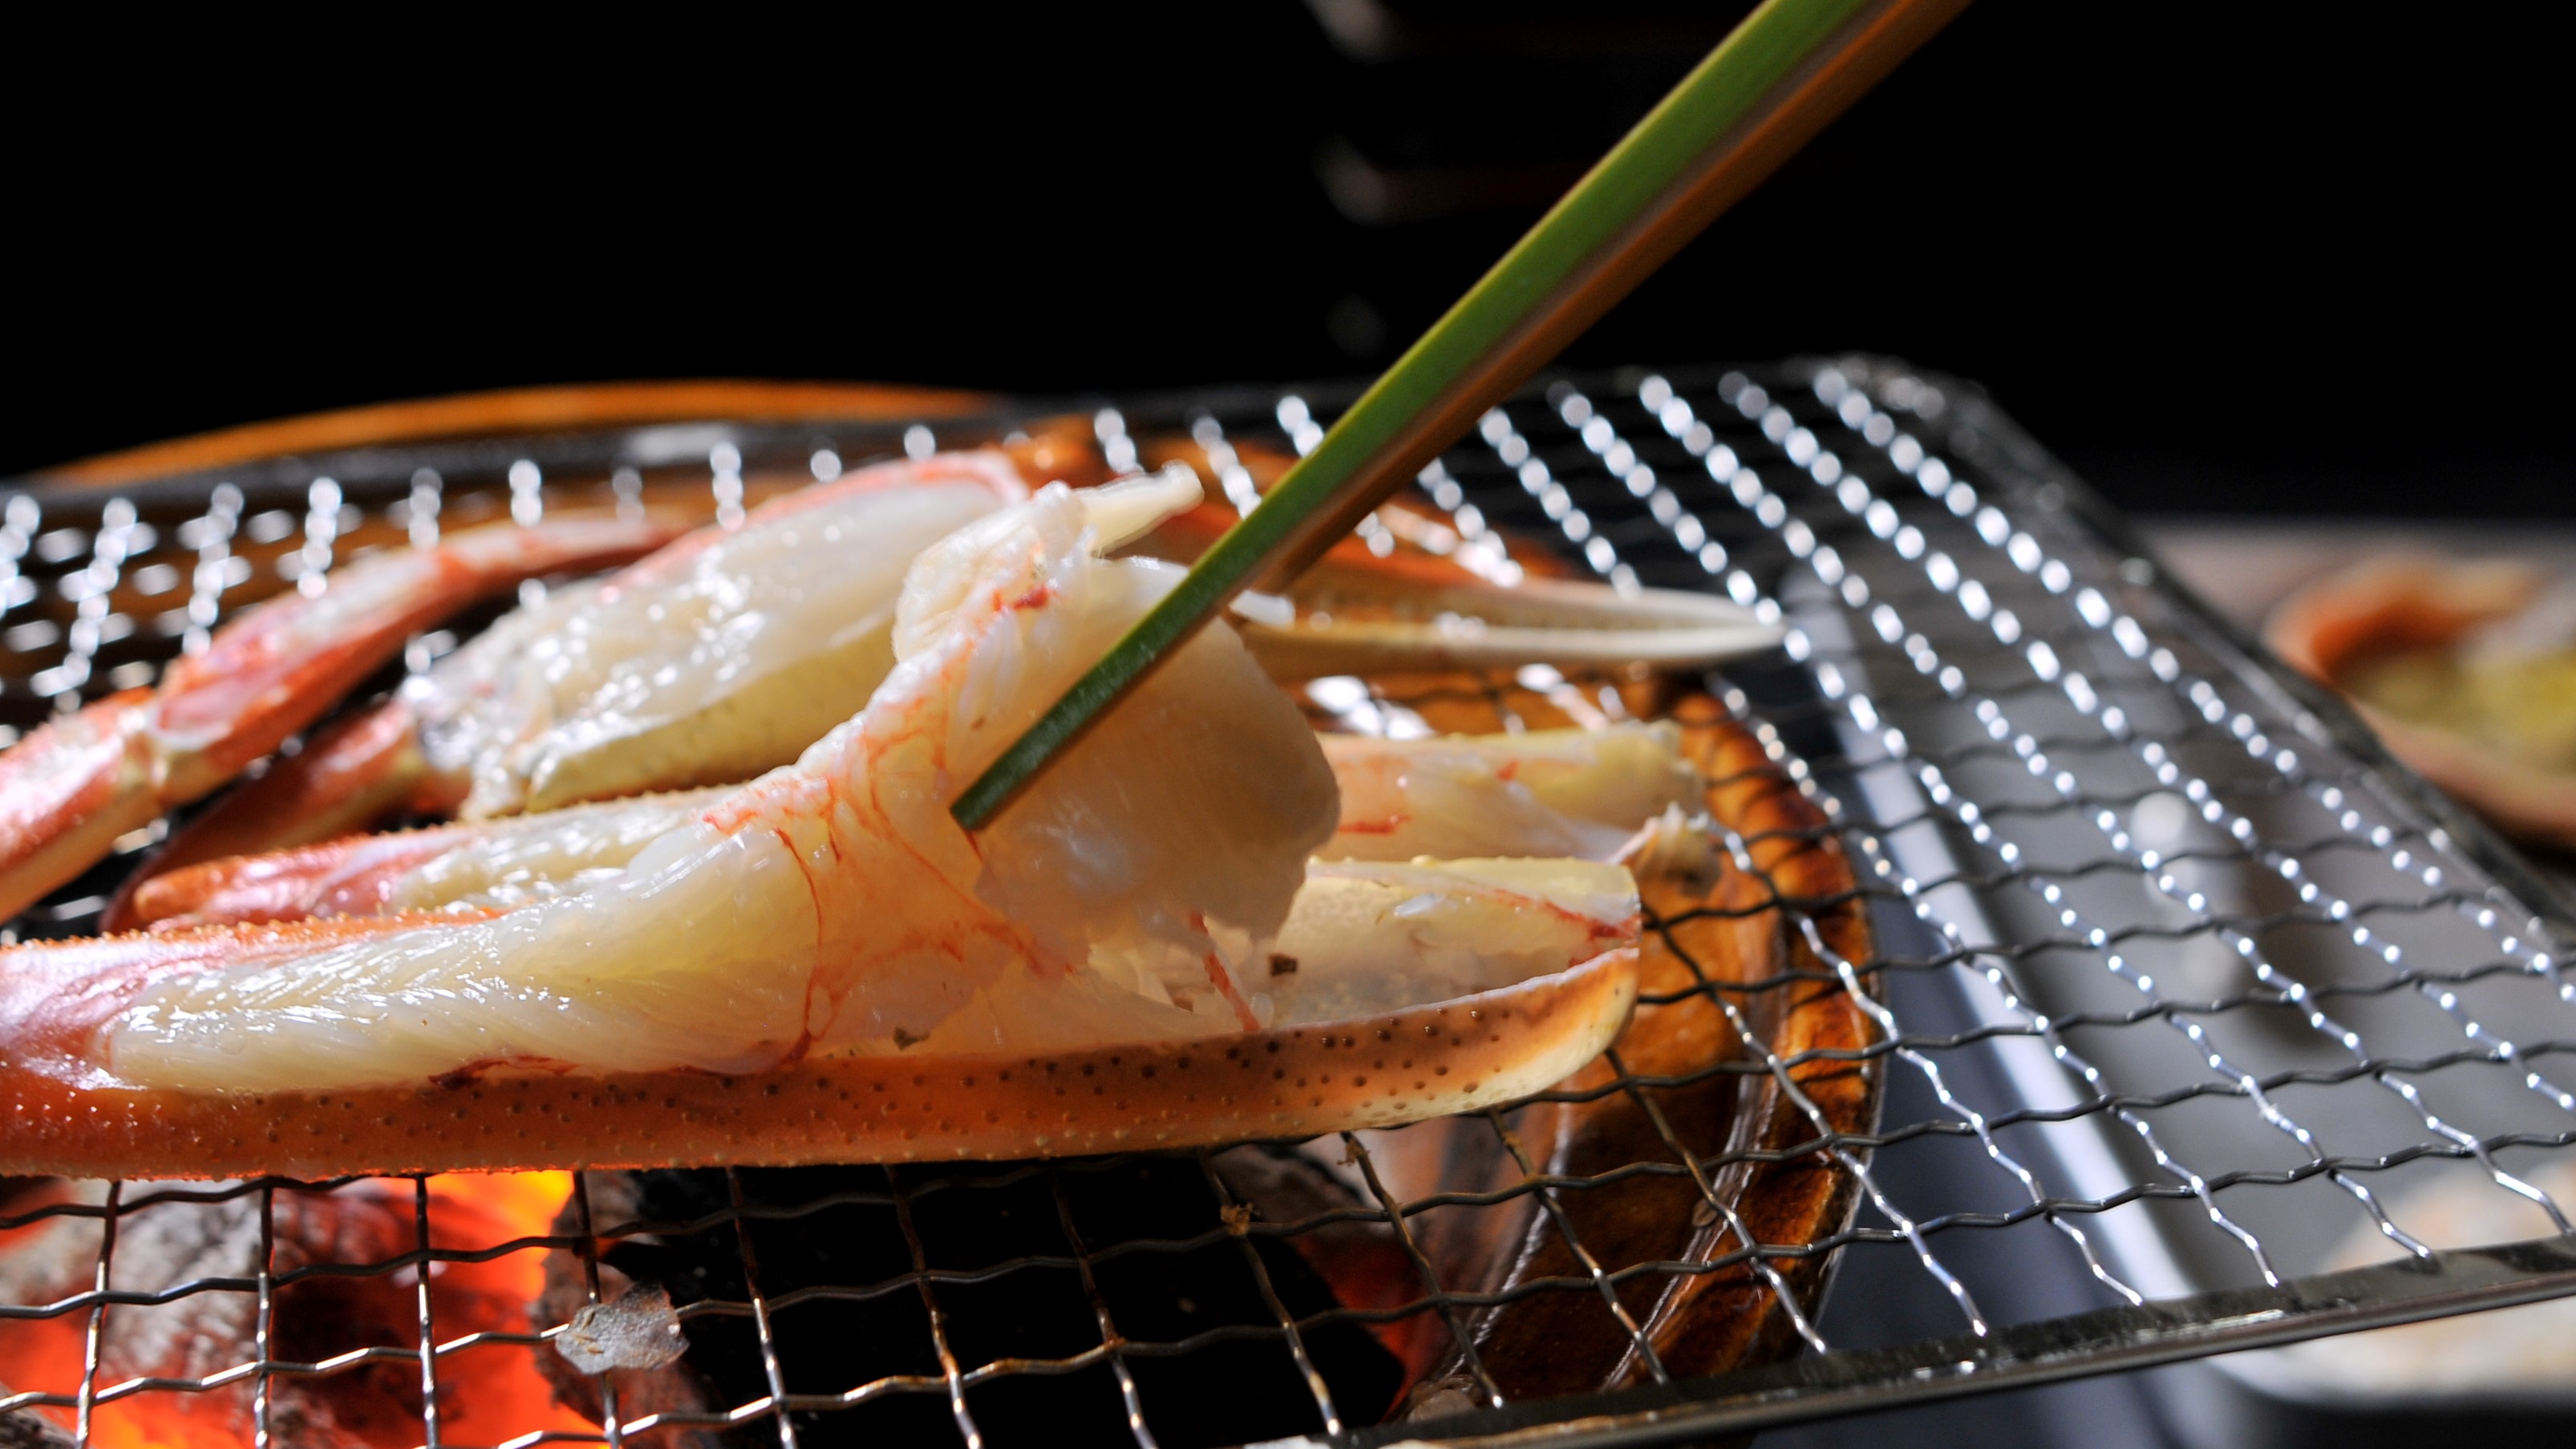 【焼きガニ】炭火で焼き上げた濃厚な蟹の味わいは格別です。